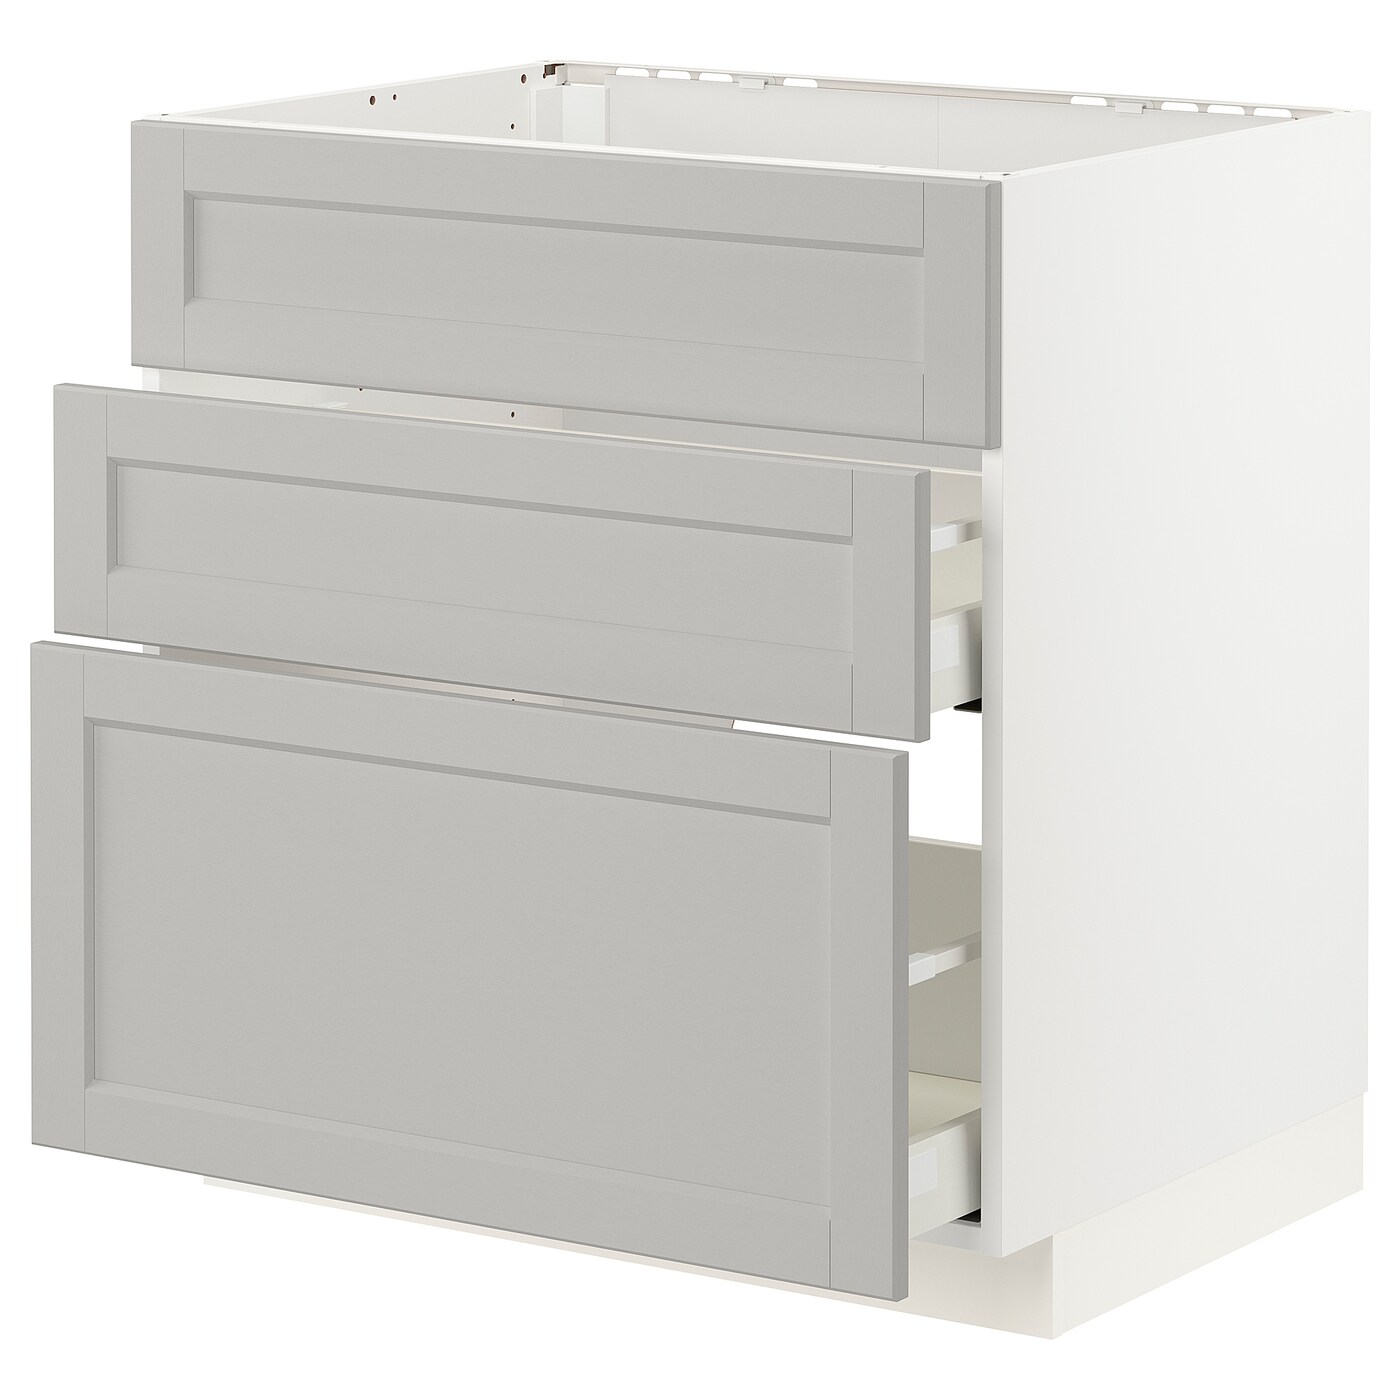 Напольный шкаф - METOD / MAXIMERA IKEA/ МЕТОД/ МАКСИМЕРА ИКЕА,  80х80 см, белый/светло-серый